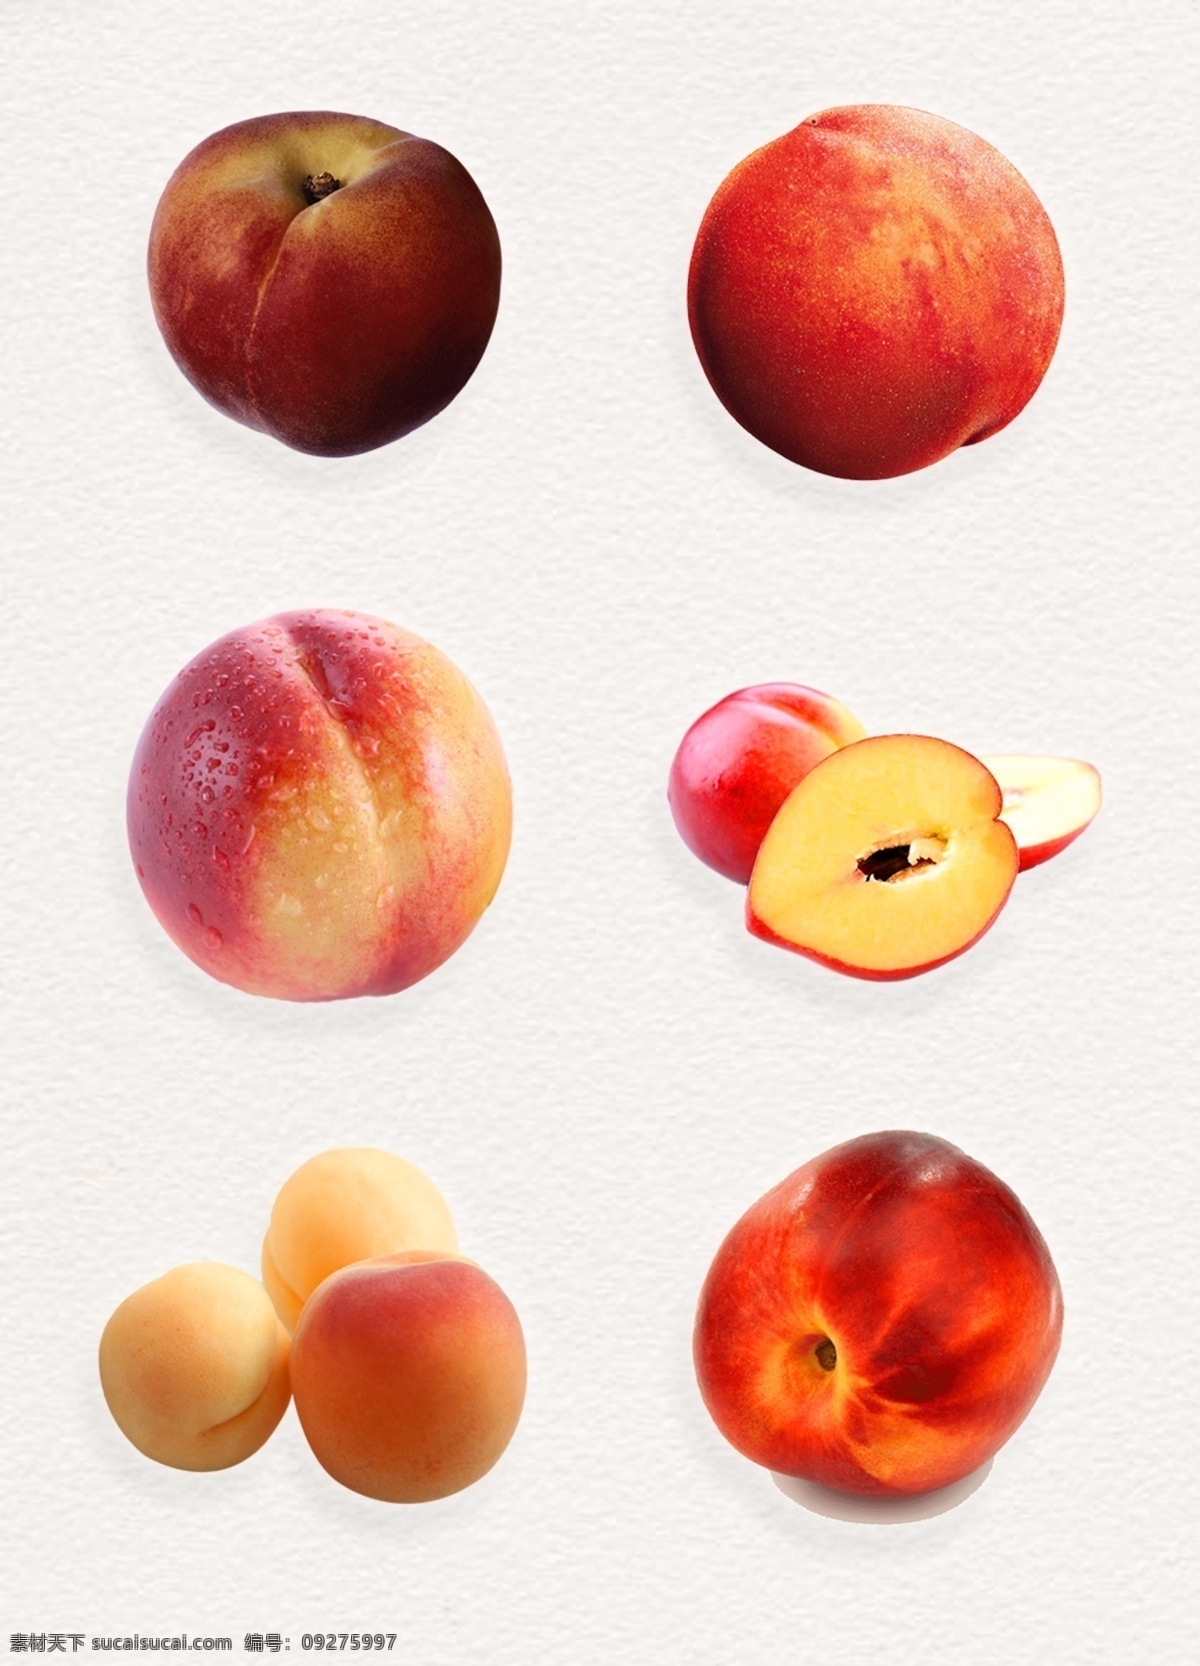 饱满 水果 桃子 免 抠 切开的桃子 红桃图片 水果图片 水果桃子 新鲜桃子 红色桃子 桃子照片 桃子图片高清 美味桃子